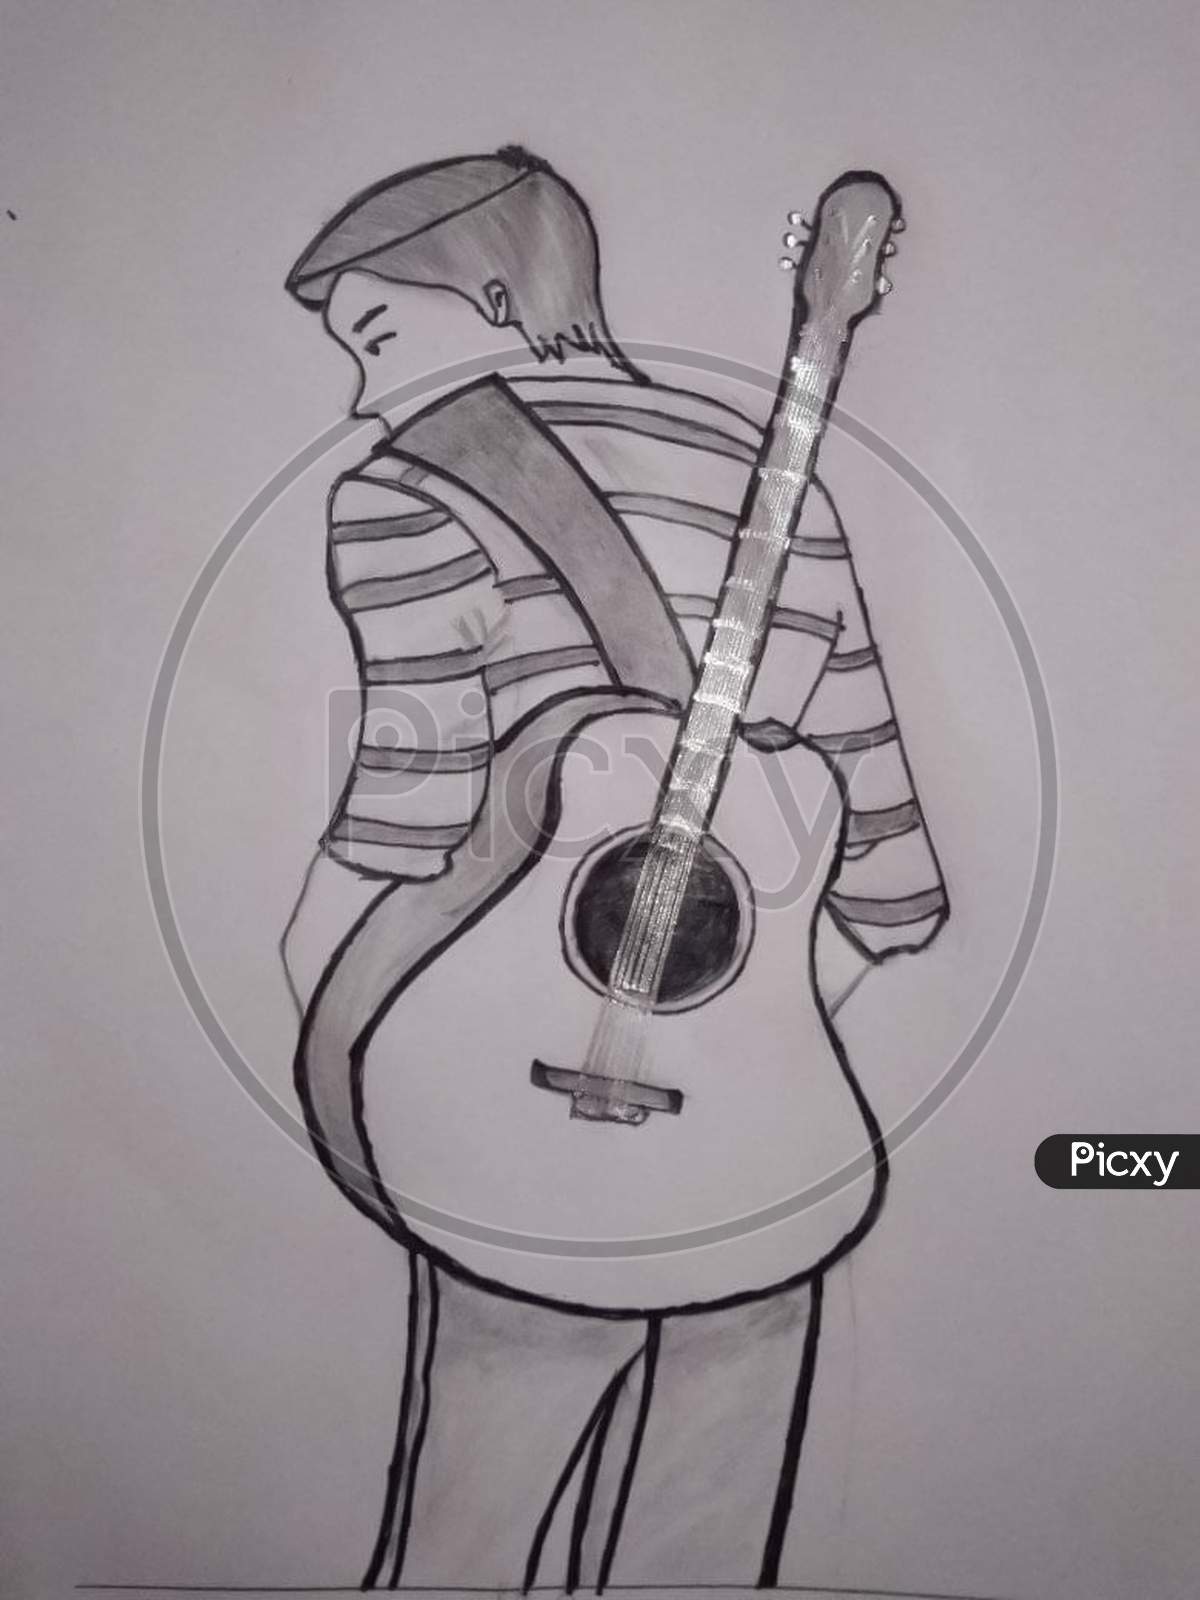 Image of Guitar boy sketchOS152271Picxy